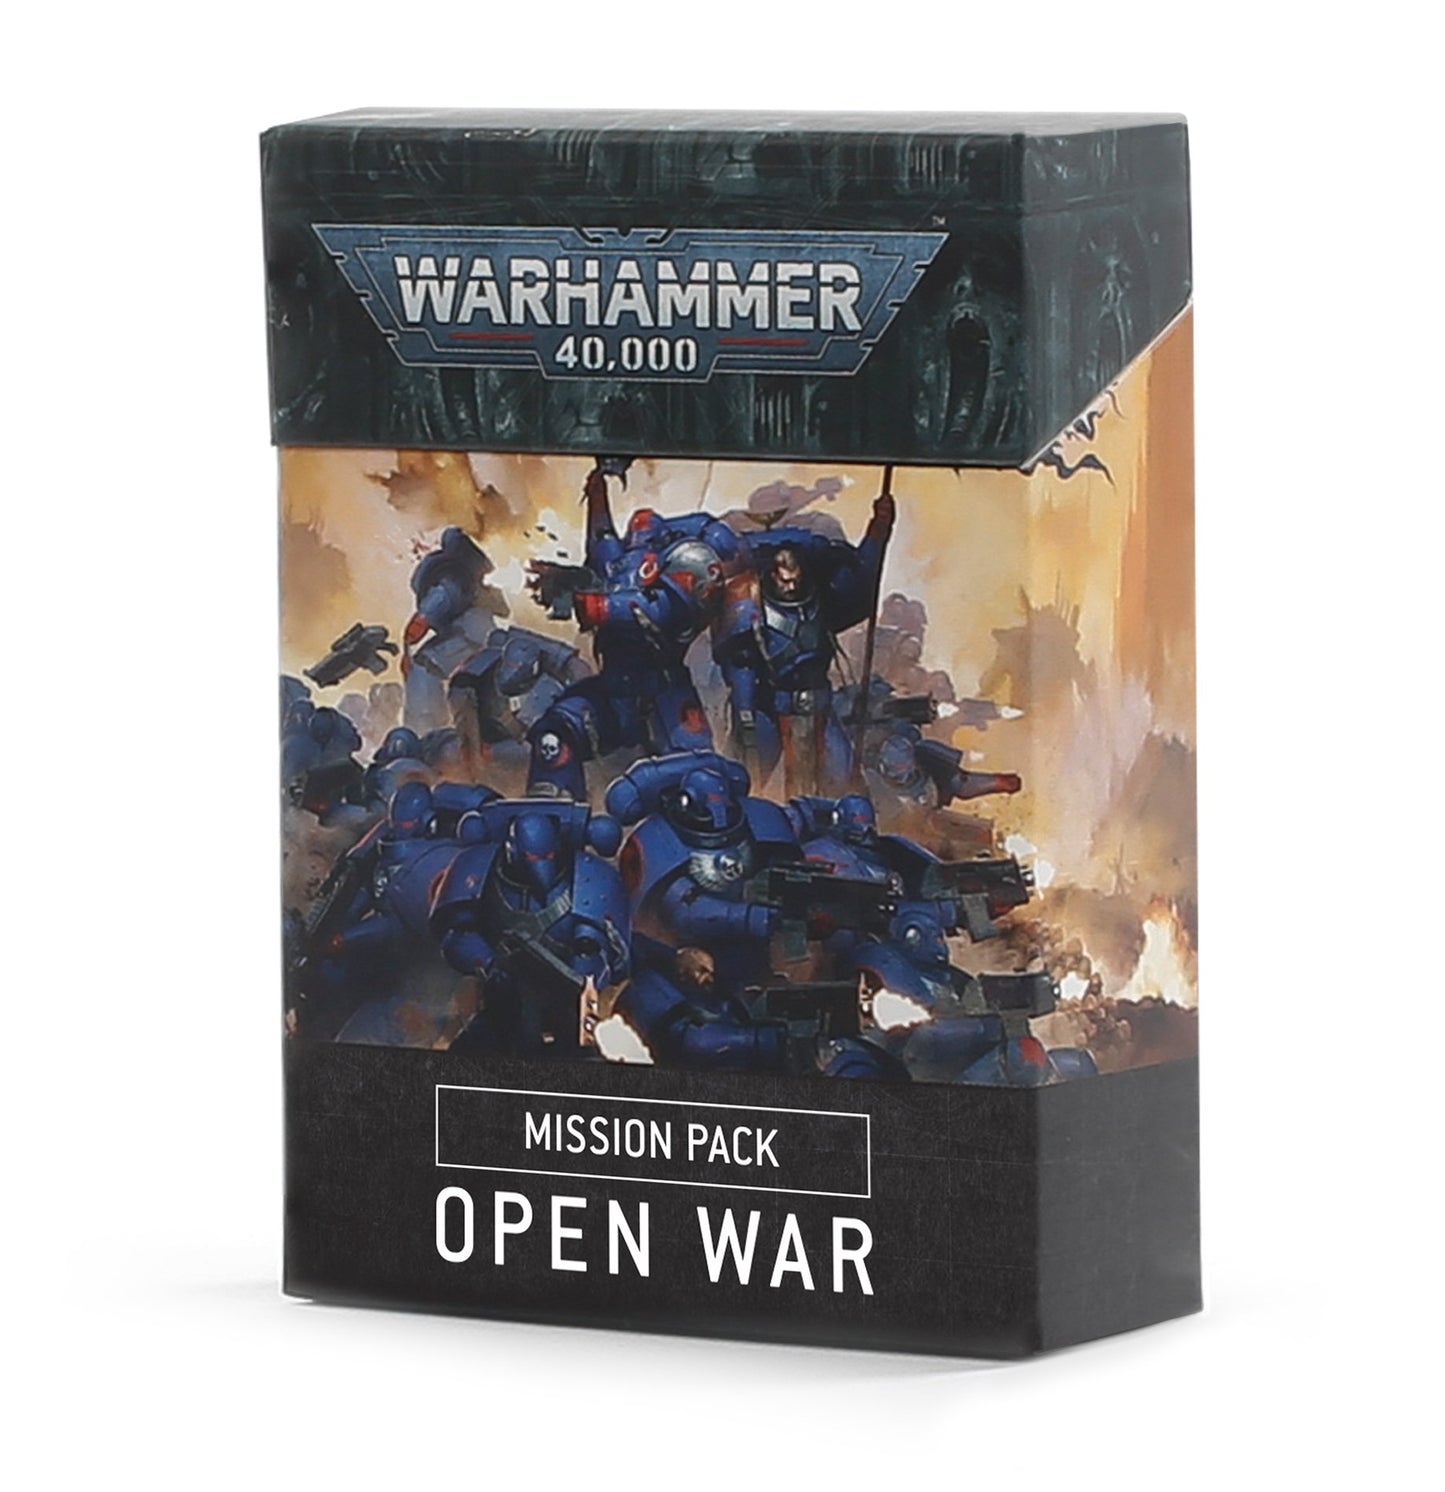 Warhammer 40,000: Open War Mission Pack